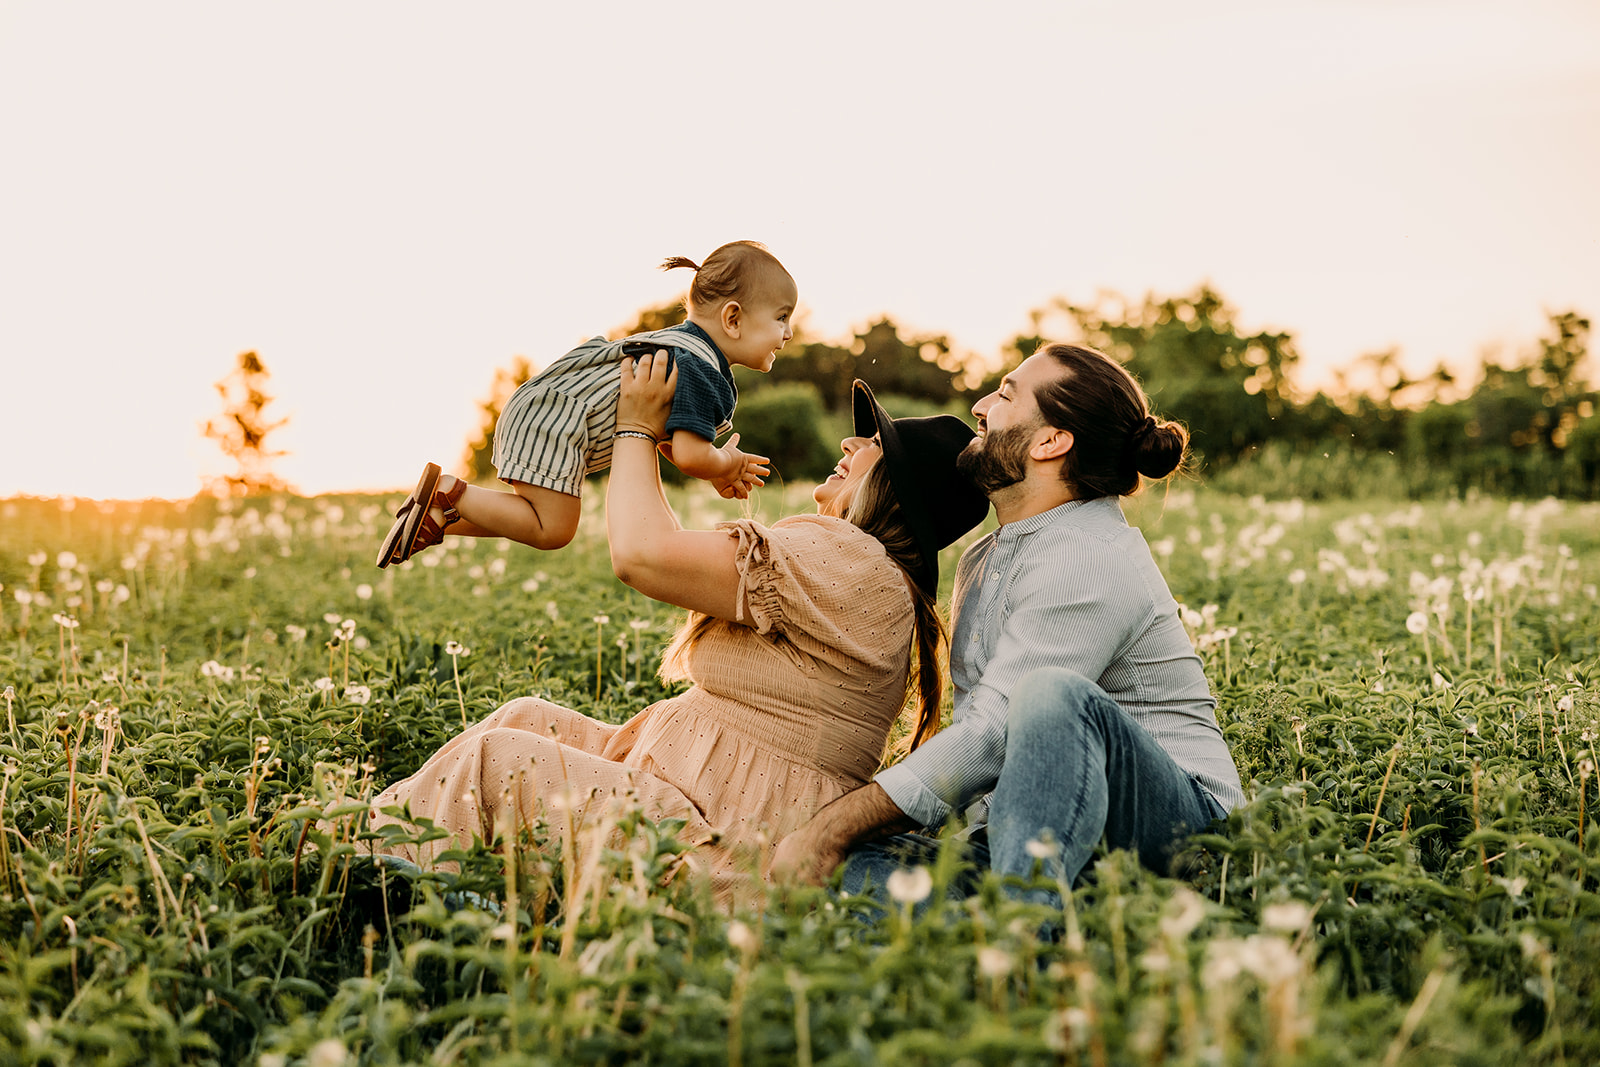 Ottawa family photoshoot in harmony with nature's splendor